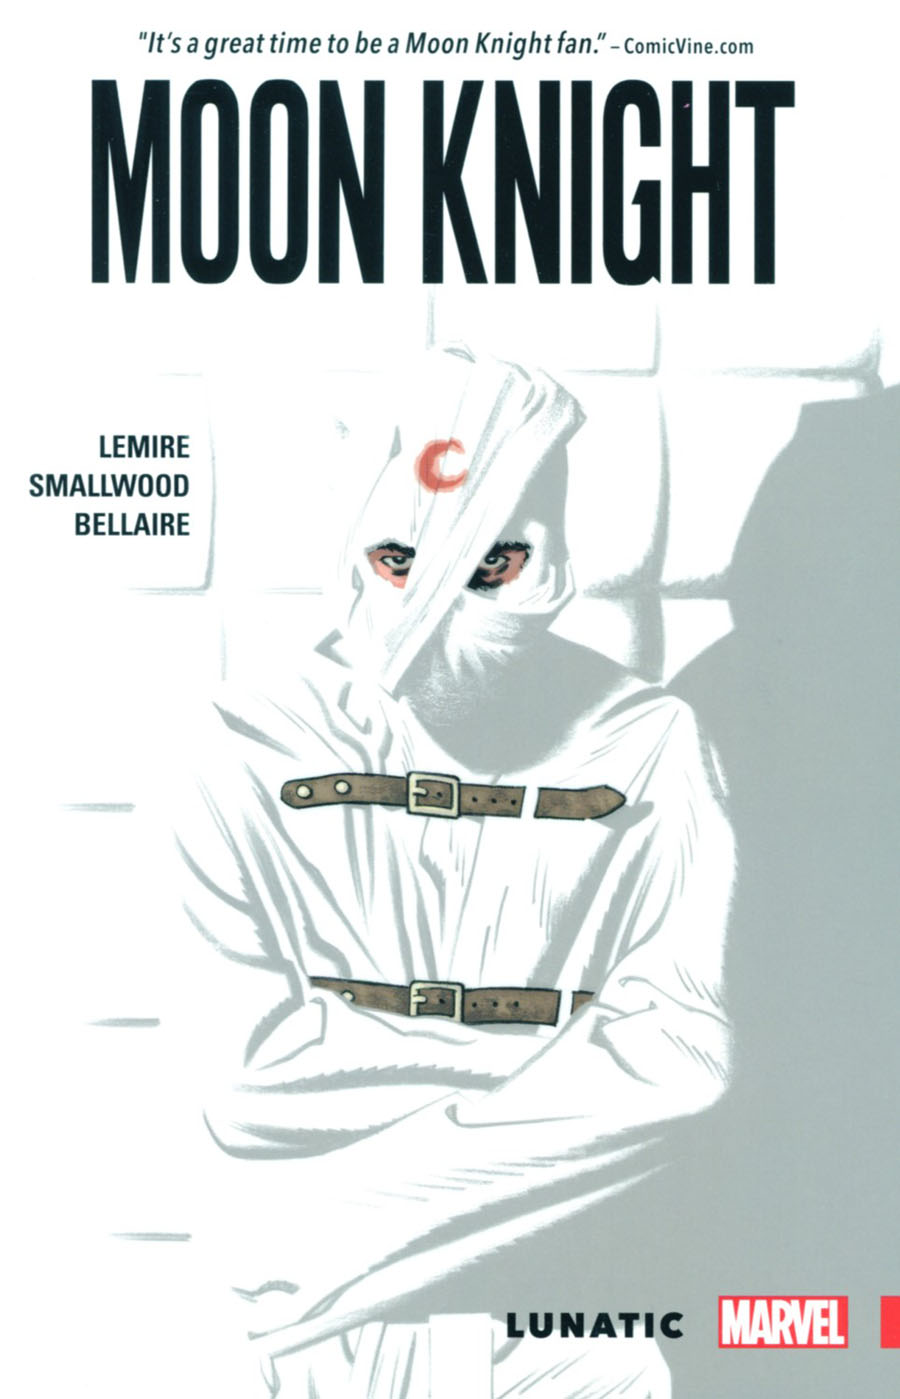 Moon Knight (2016) Vol 1 Lunatic TP